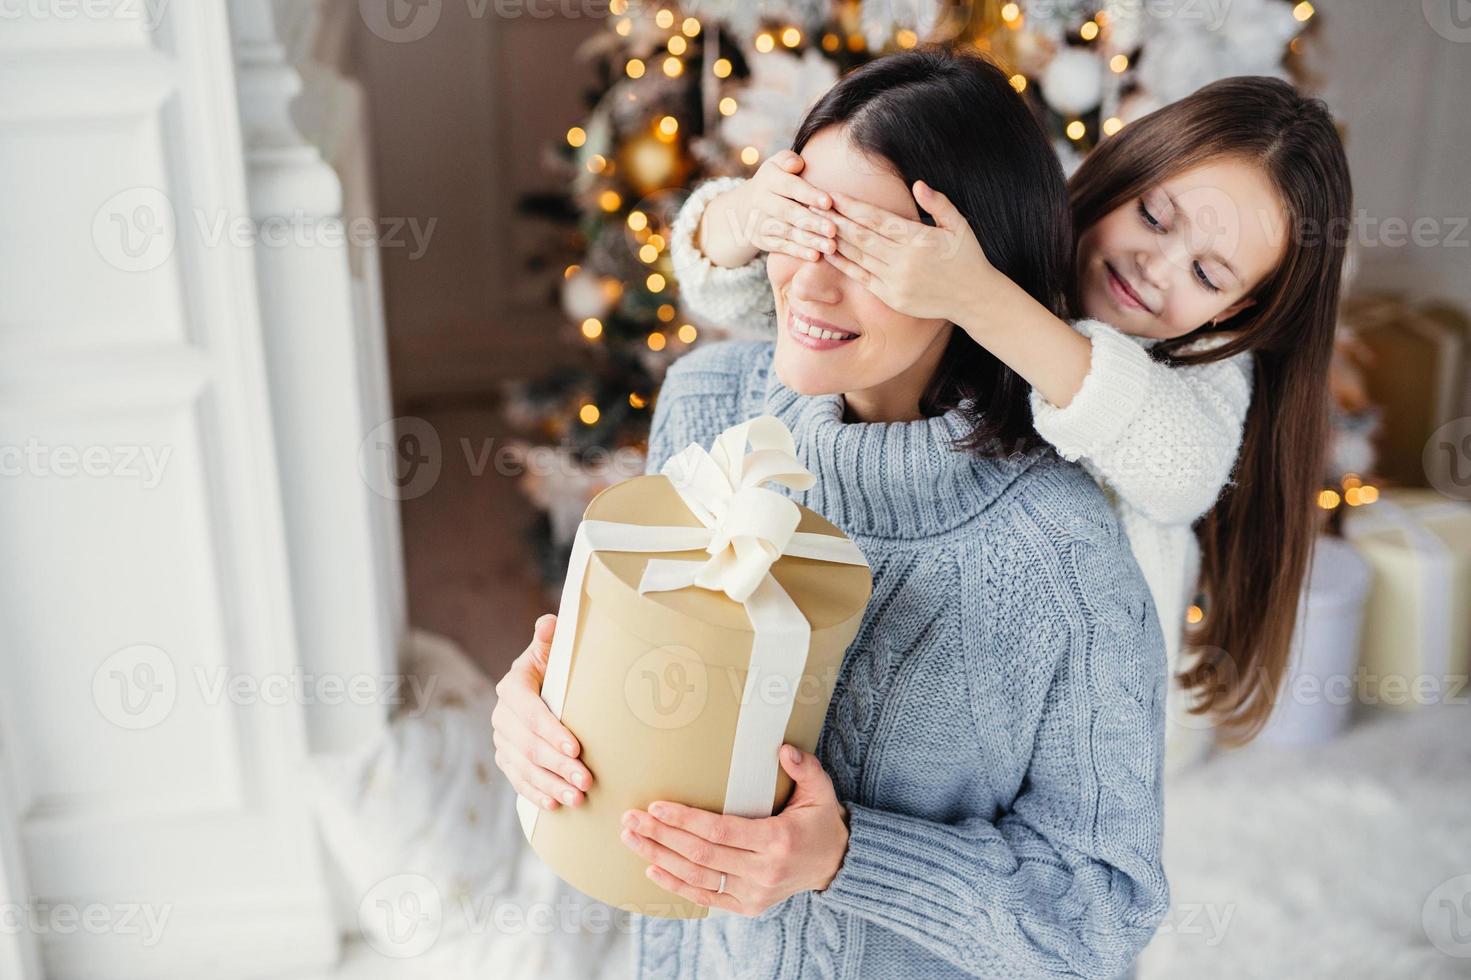 klein schattig vrouwelijk kind bereidt verrassing voor haar moeder voor, sluit de ogen en geeft een ingepakt cadeau als standaard op de achtergrond van het nieuwe jaar. mooie vrouw ontvangt geschenk van dochter. verrassingsconcept foto